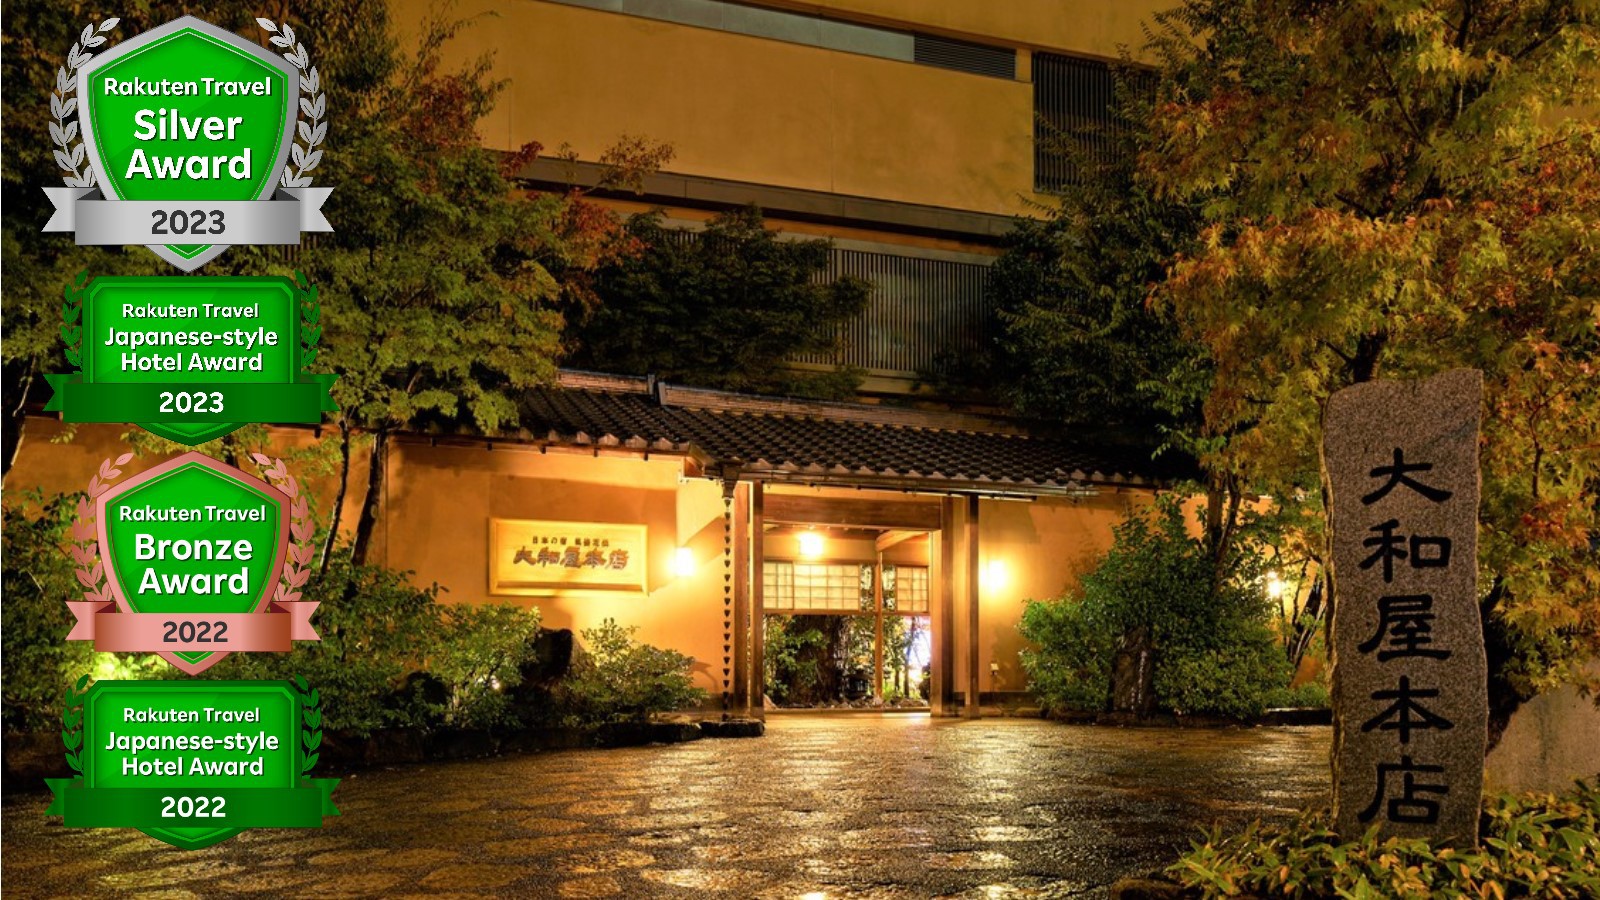 高齢の母を四国か九州の温泉に連れて行きたい。高齢者に配慮した食事メニューがありバリアフリーのホテルは？